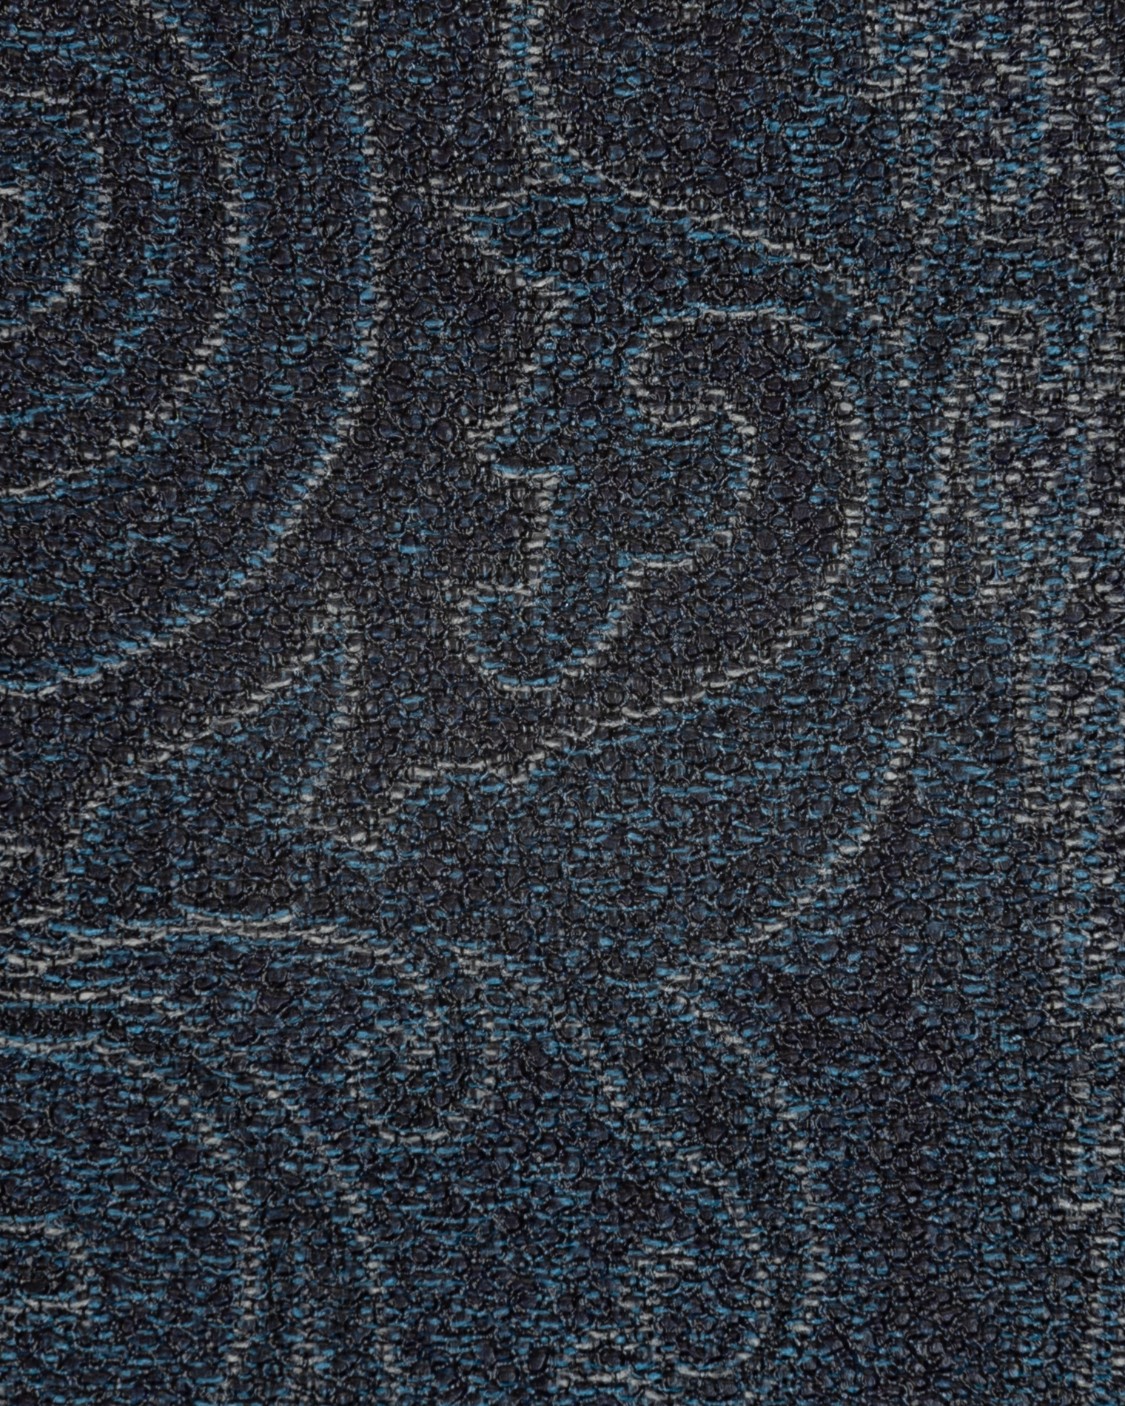 shop ETRO  Portafoglio: Etro portafoglio realizzato nell' iconica tela paisley jacquardv nel colore blu.
Logo in metallo.
Otto scomparti per le carte.
Dettagli in pelle di vitello.
Composizione: 76% cotone 24% poliestere.
Made in Italy.. 0F557 8878-0200 number 4794857